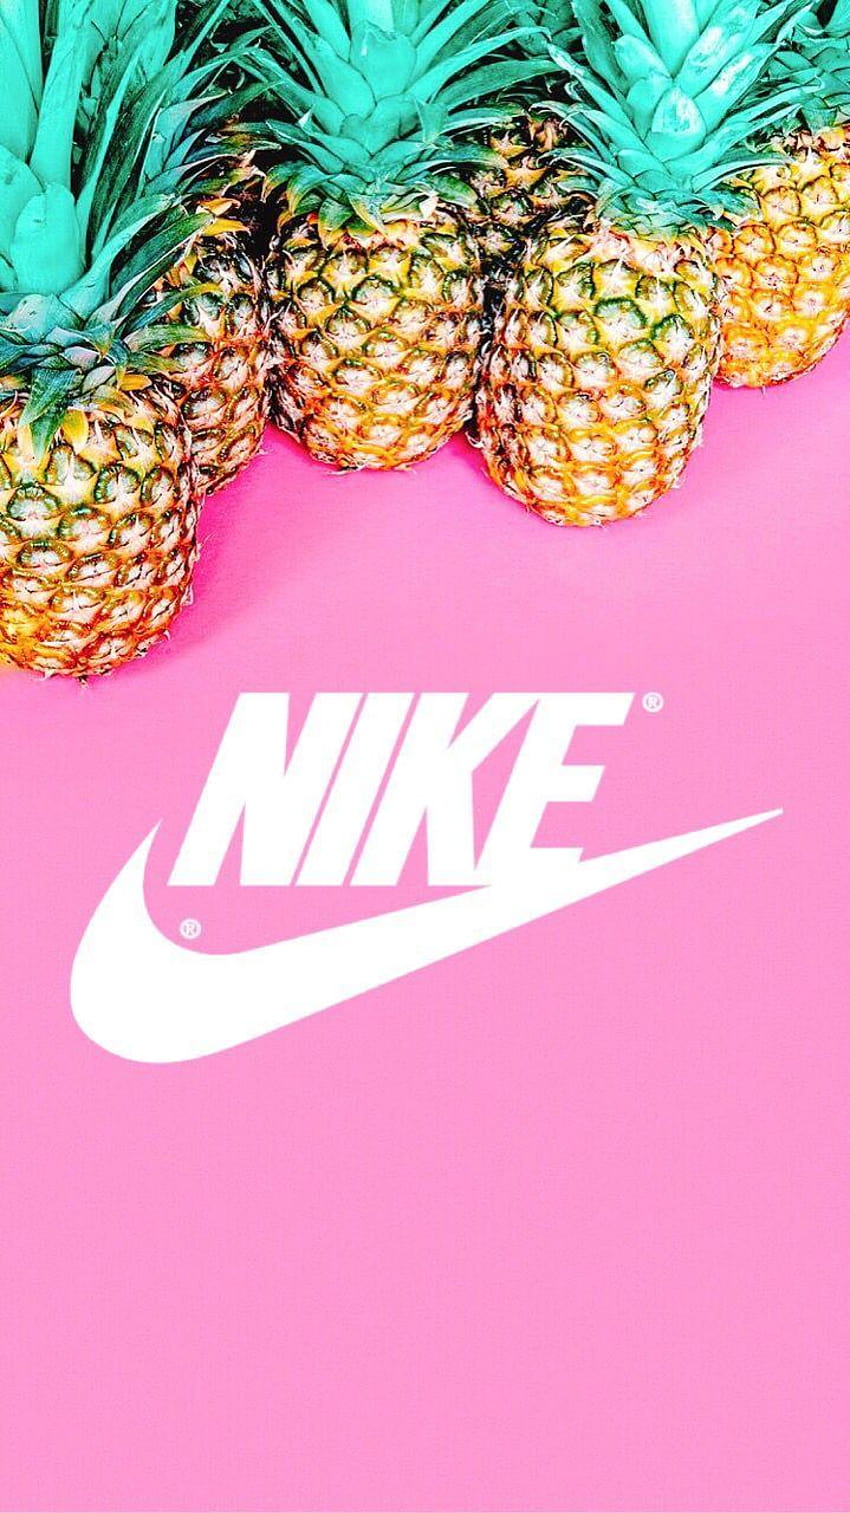 Nike Pineapple for Android, pink jordan logo HD phone wallpaper